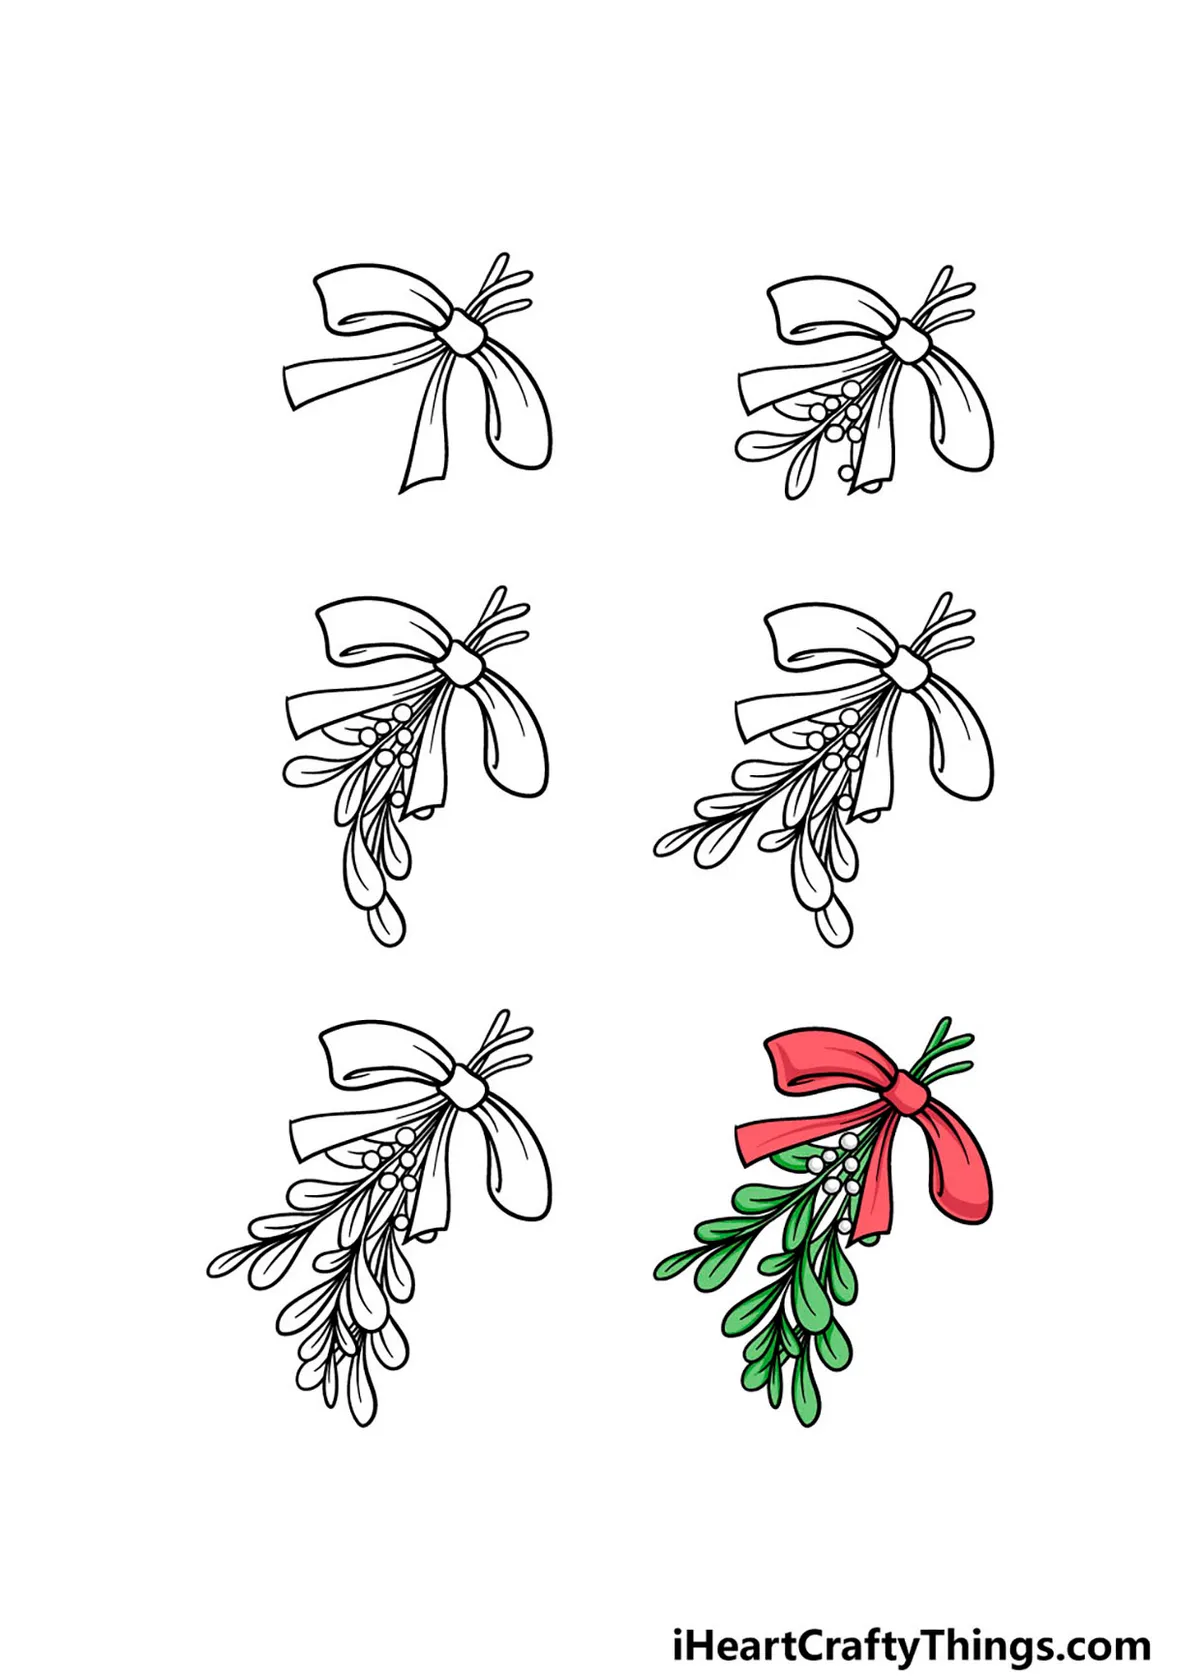 How to draw mistletoe